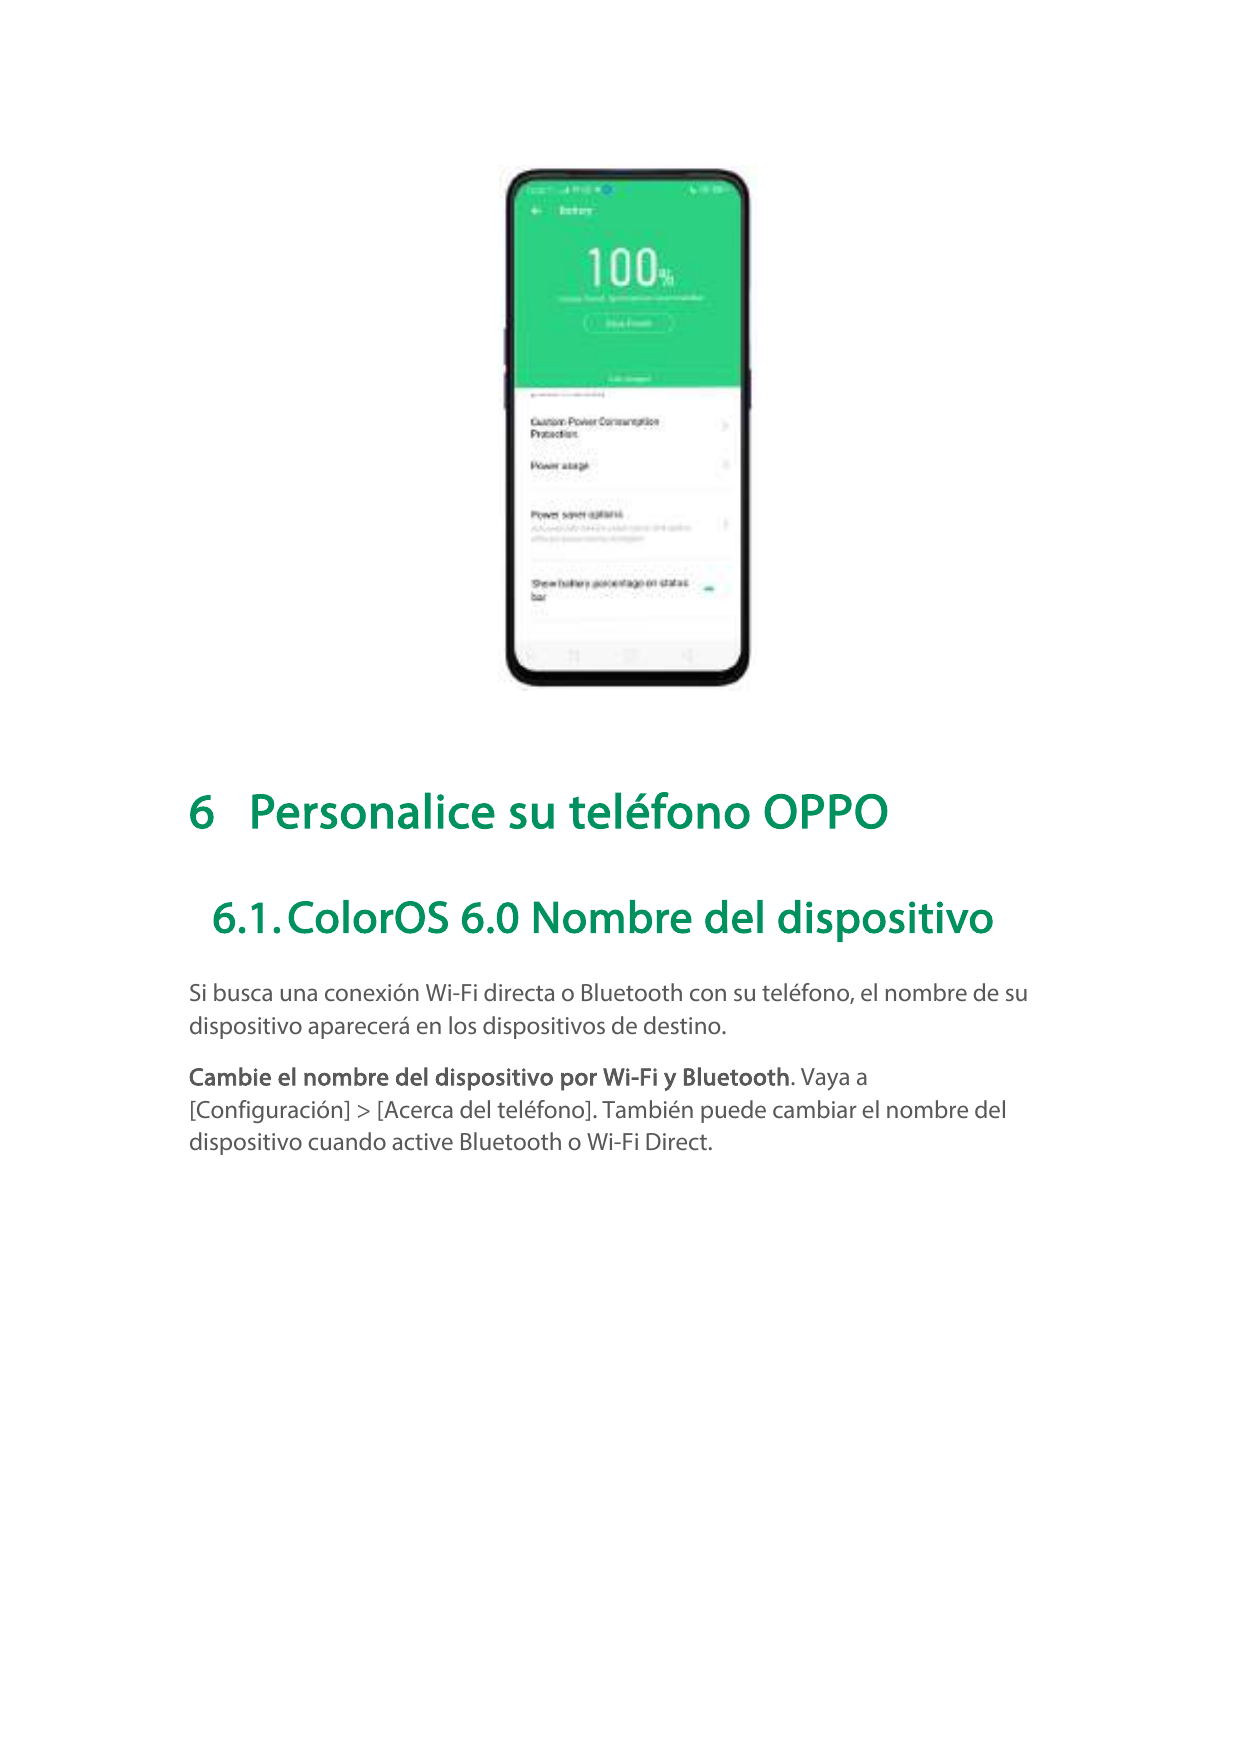 6 Personalice su teléfono OPPO6.1. ColorOS 6.0 Nombre del dispositivoSi busca una conexión Wi-Fi directa o Bluetooth con su telé